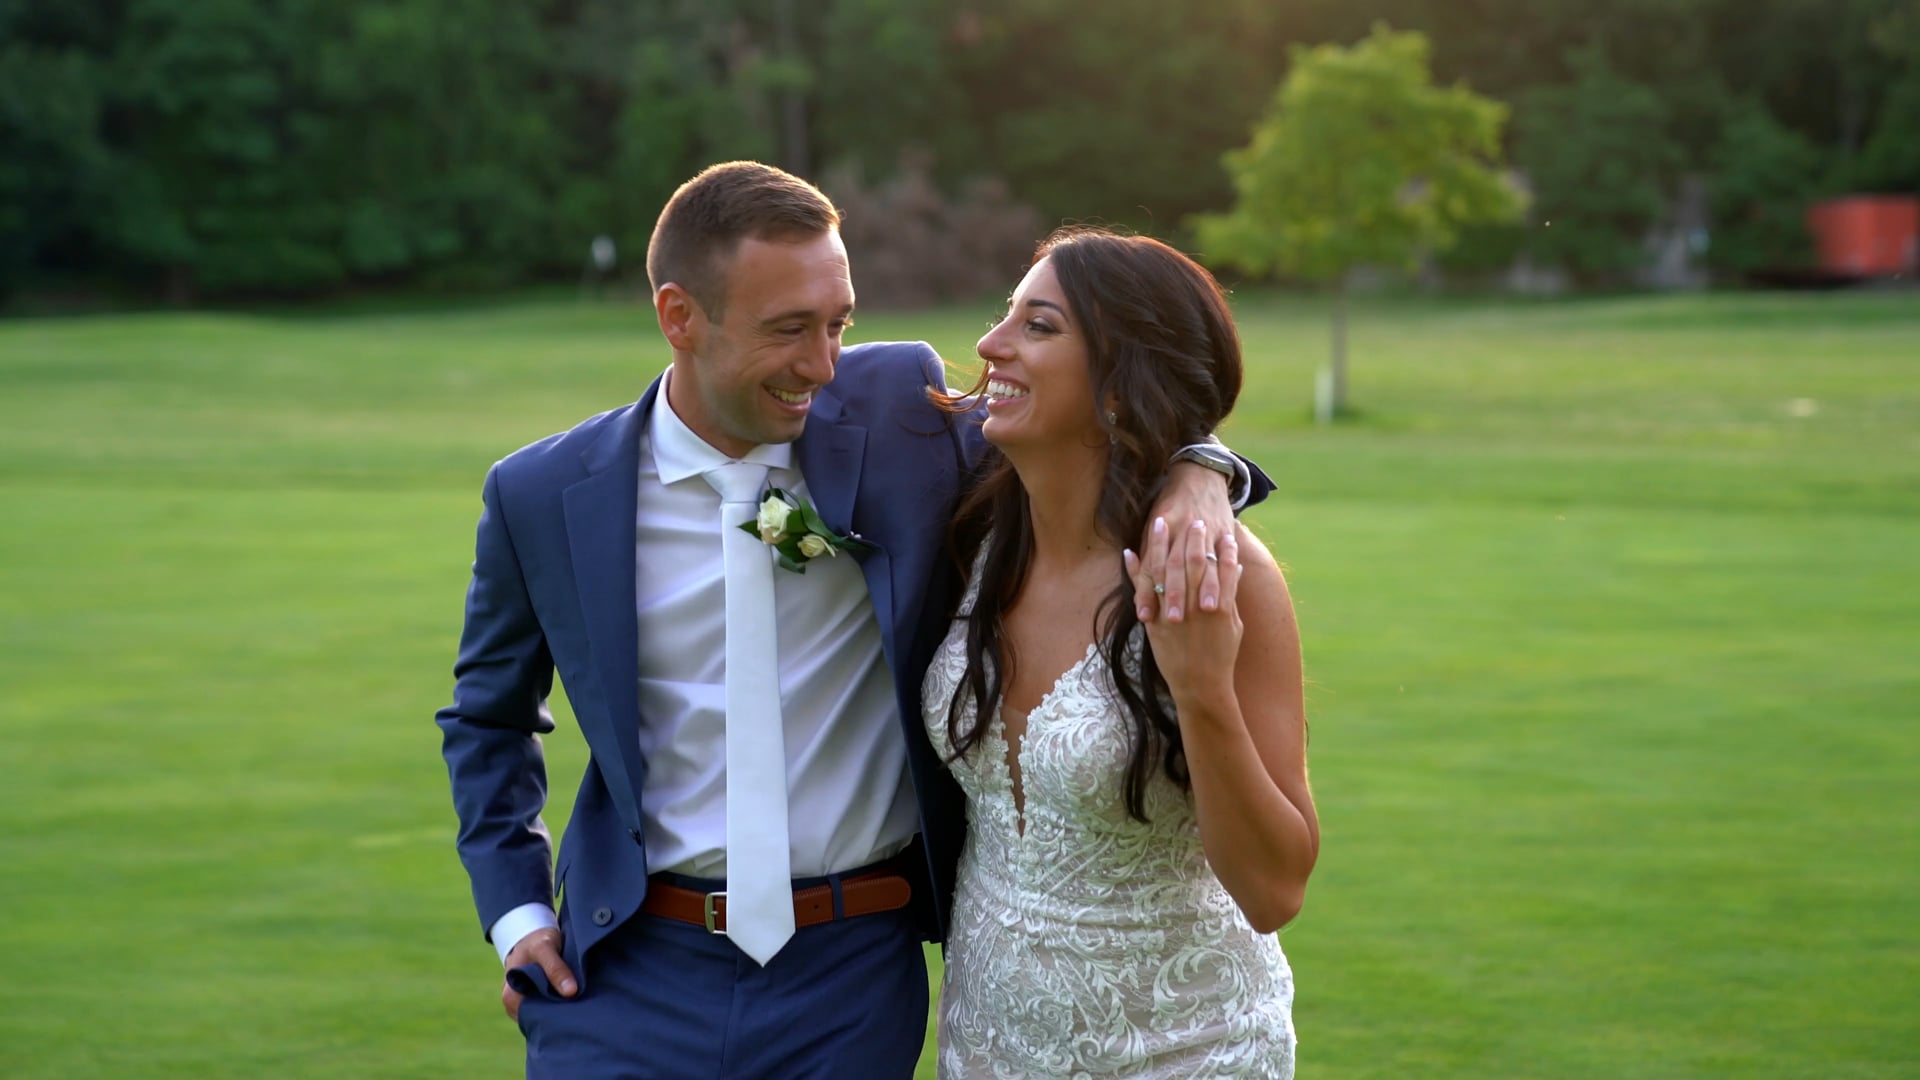 David + Brinna's Wedding Highlight Video!